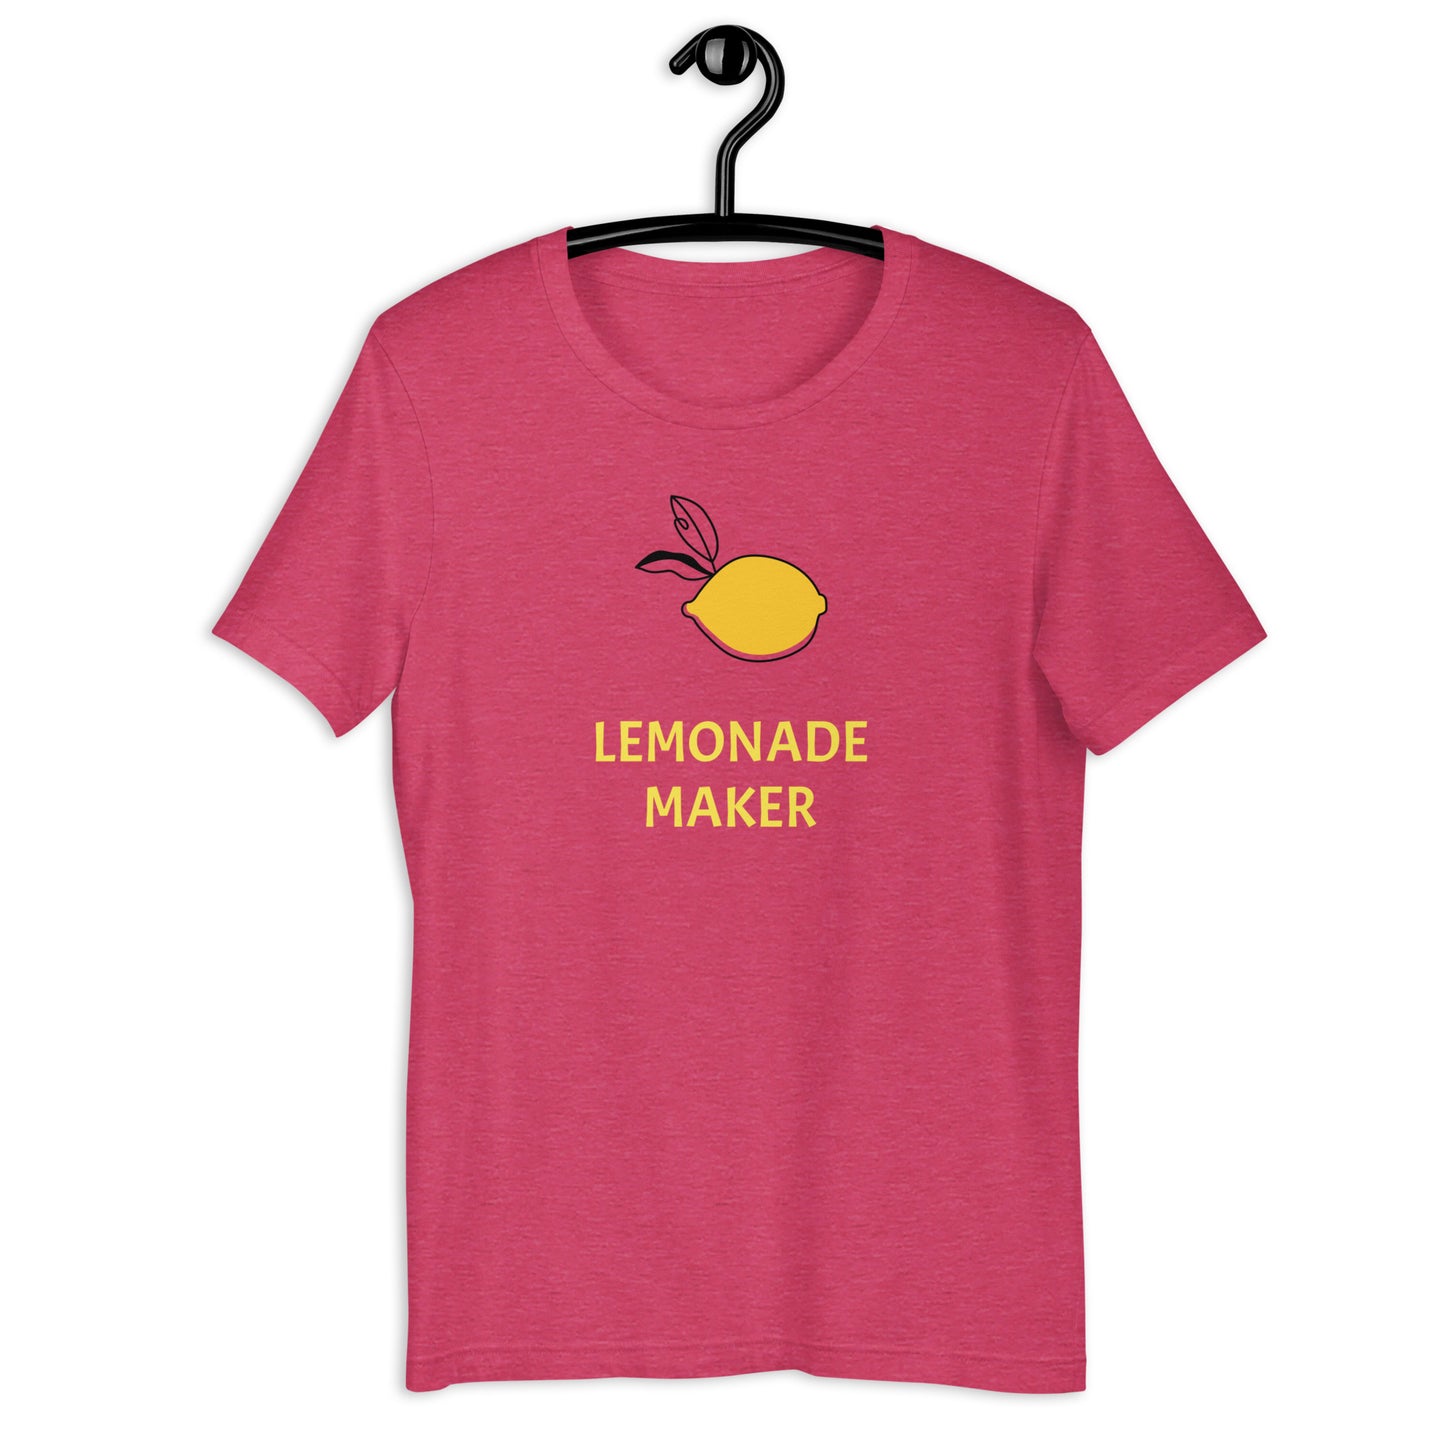 Lemonade Maker unisex t-shirt